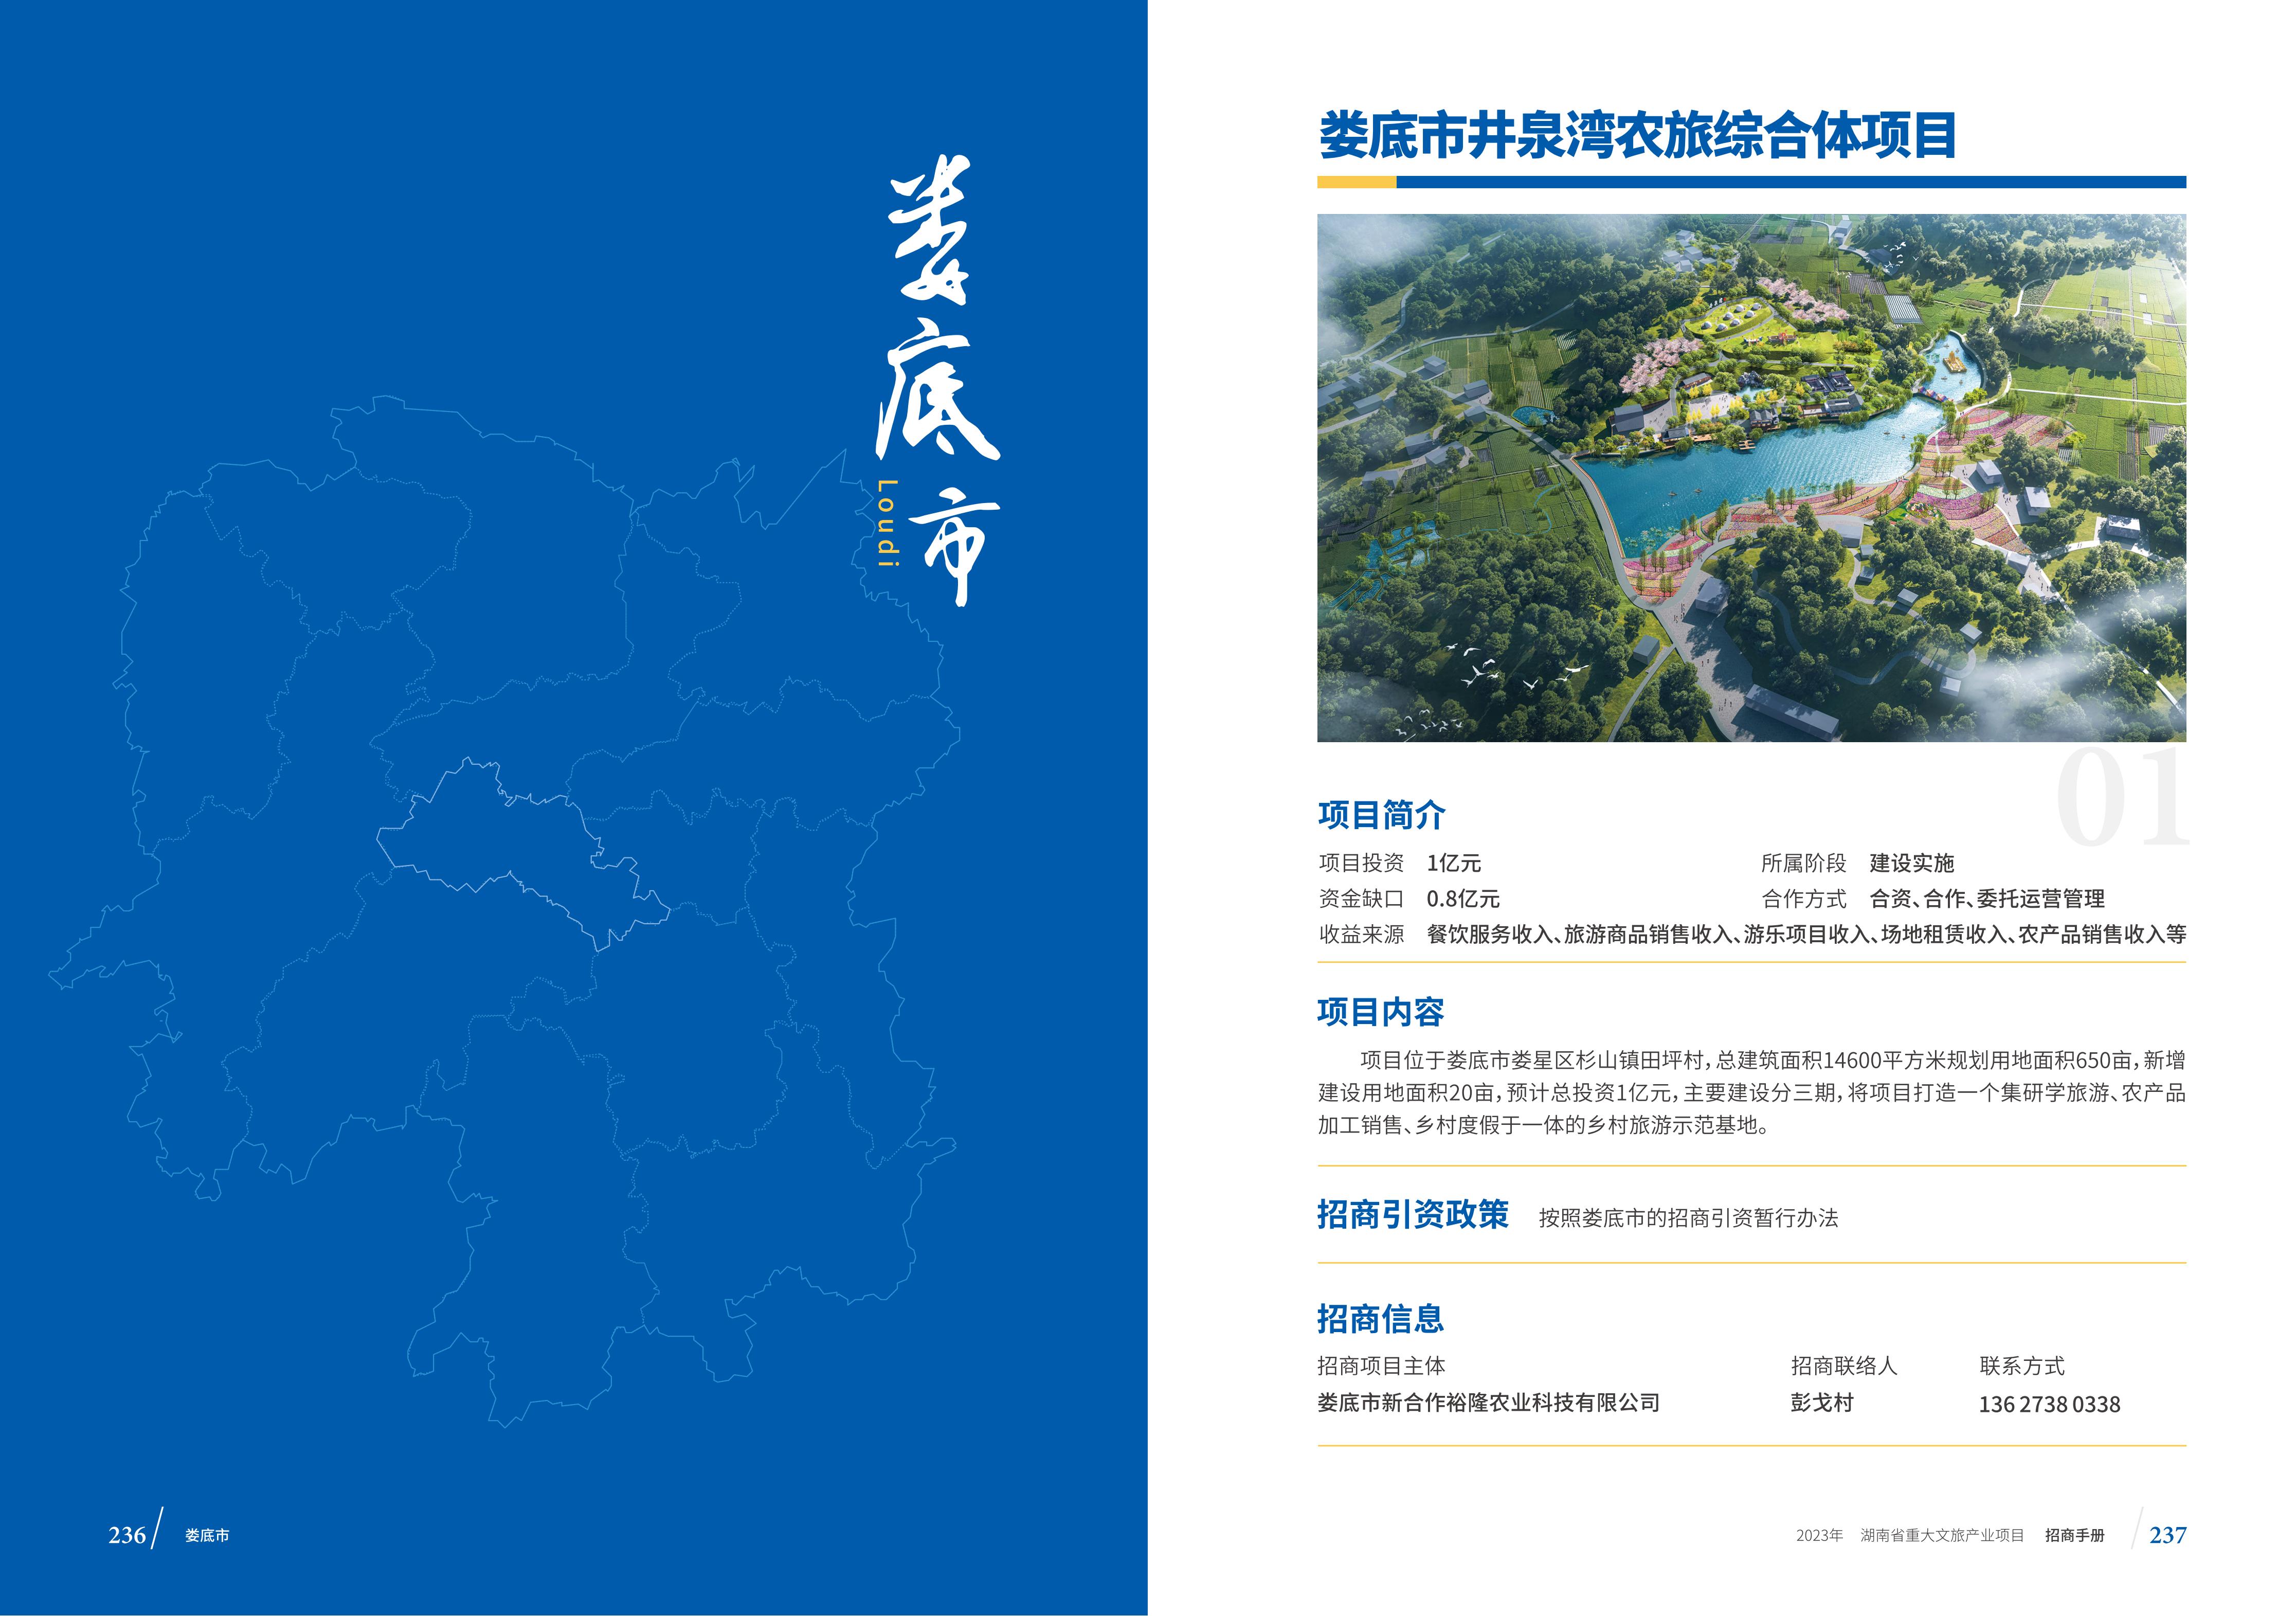 湖南省重大文旅产业项目招手册线上链接版_126.jpg